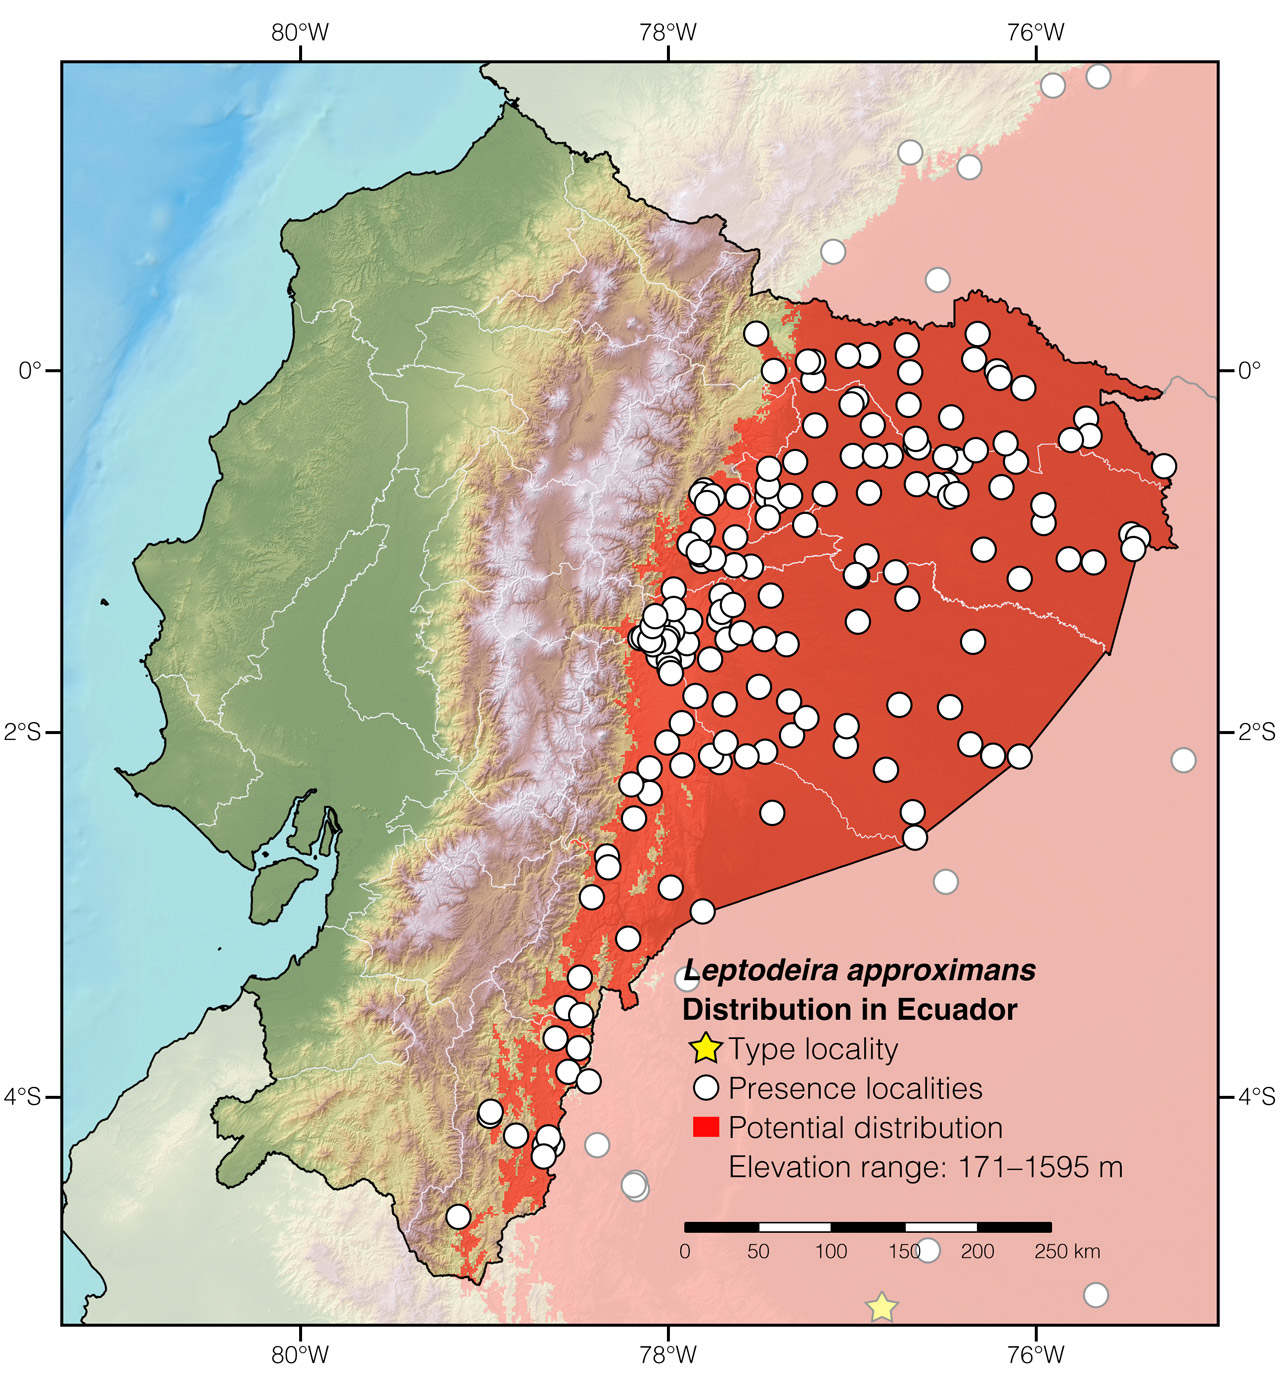 Distribution of Leptodeira approximans in Ecuador